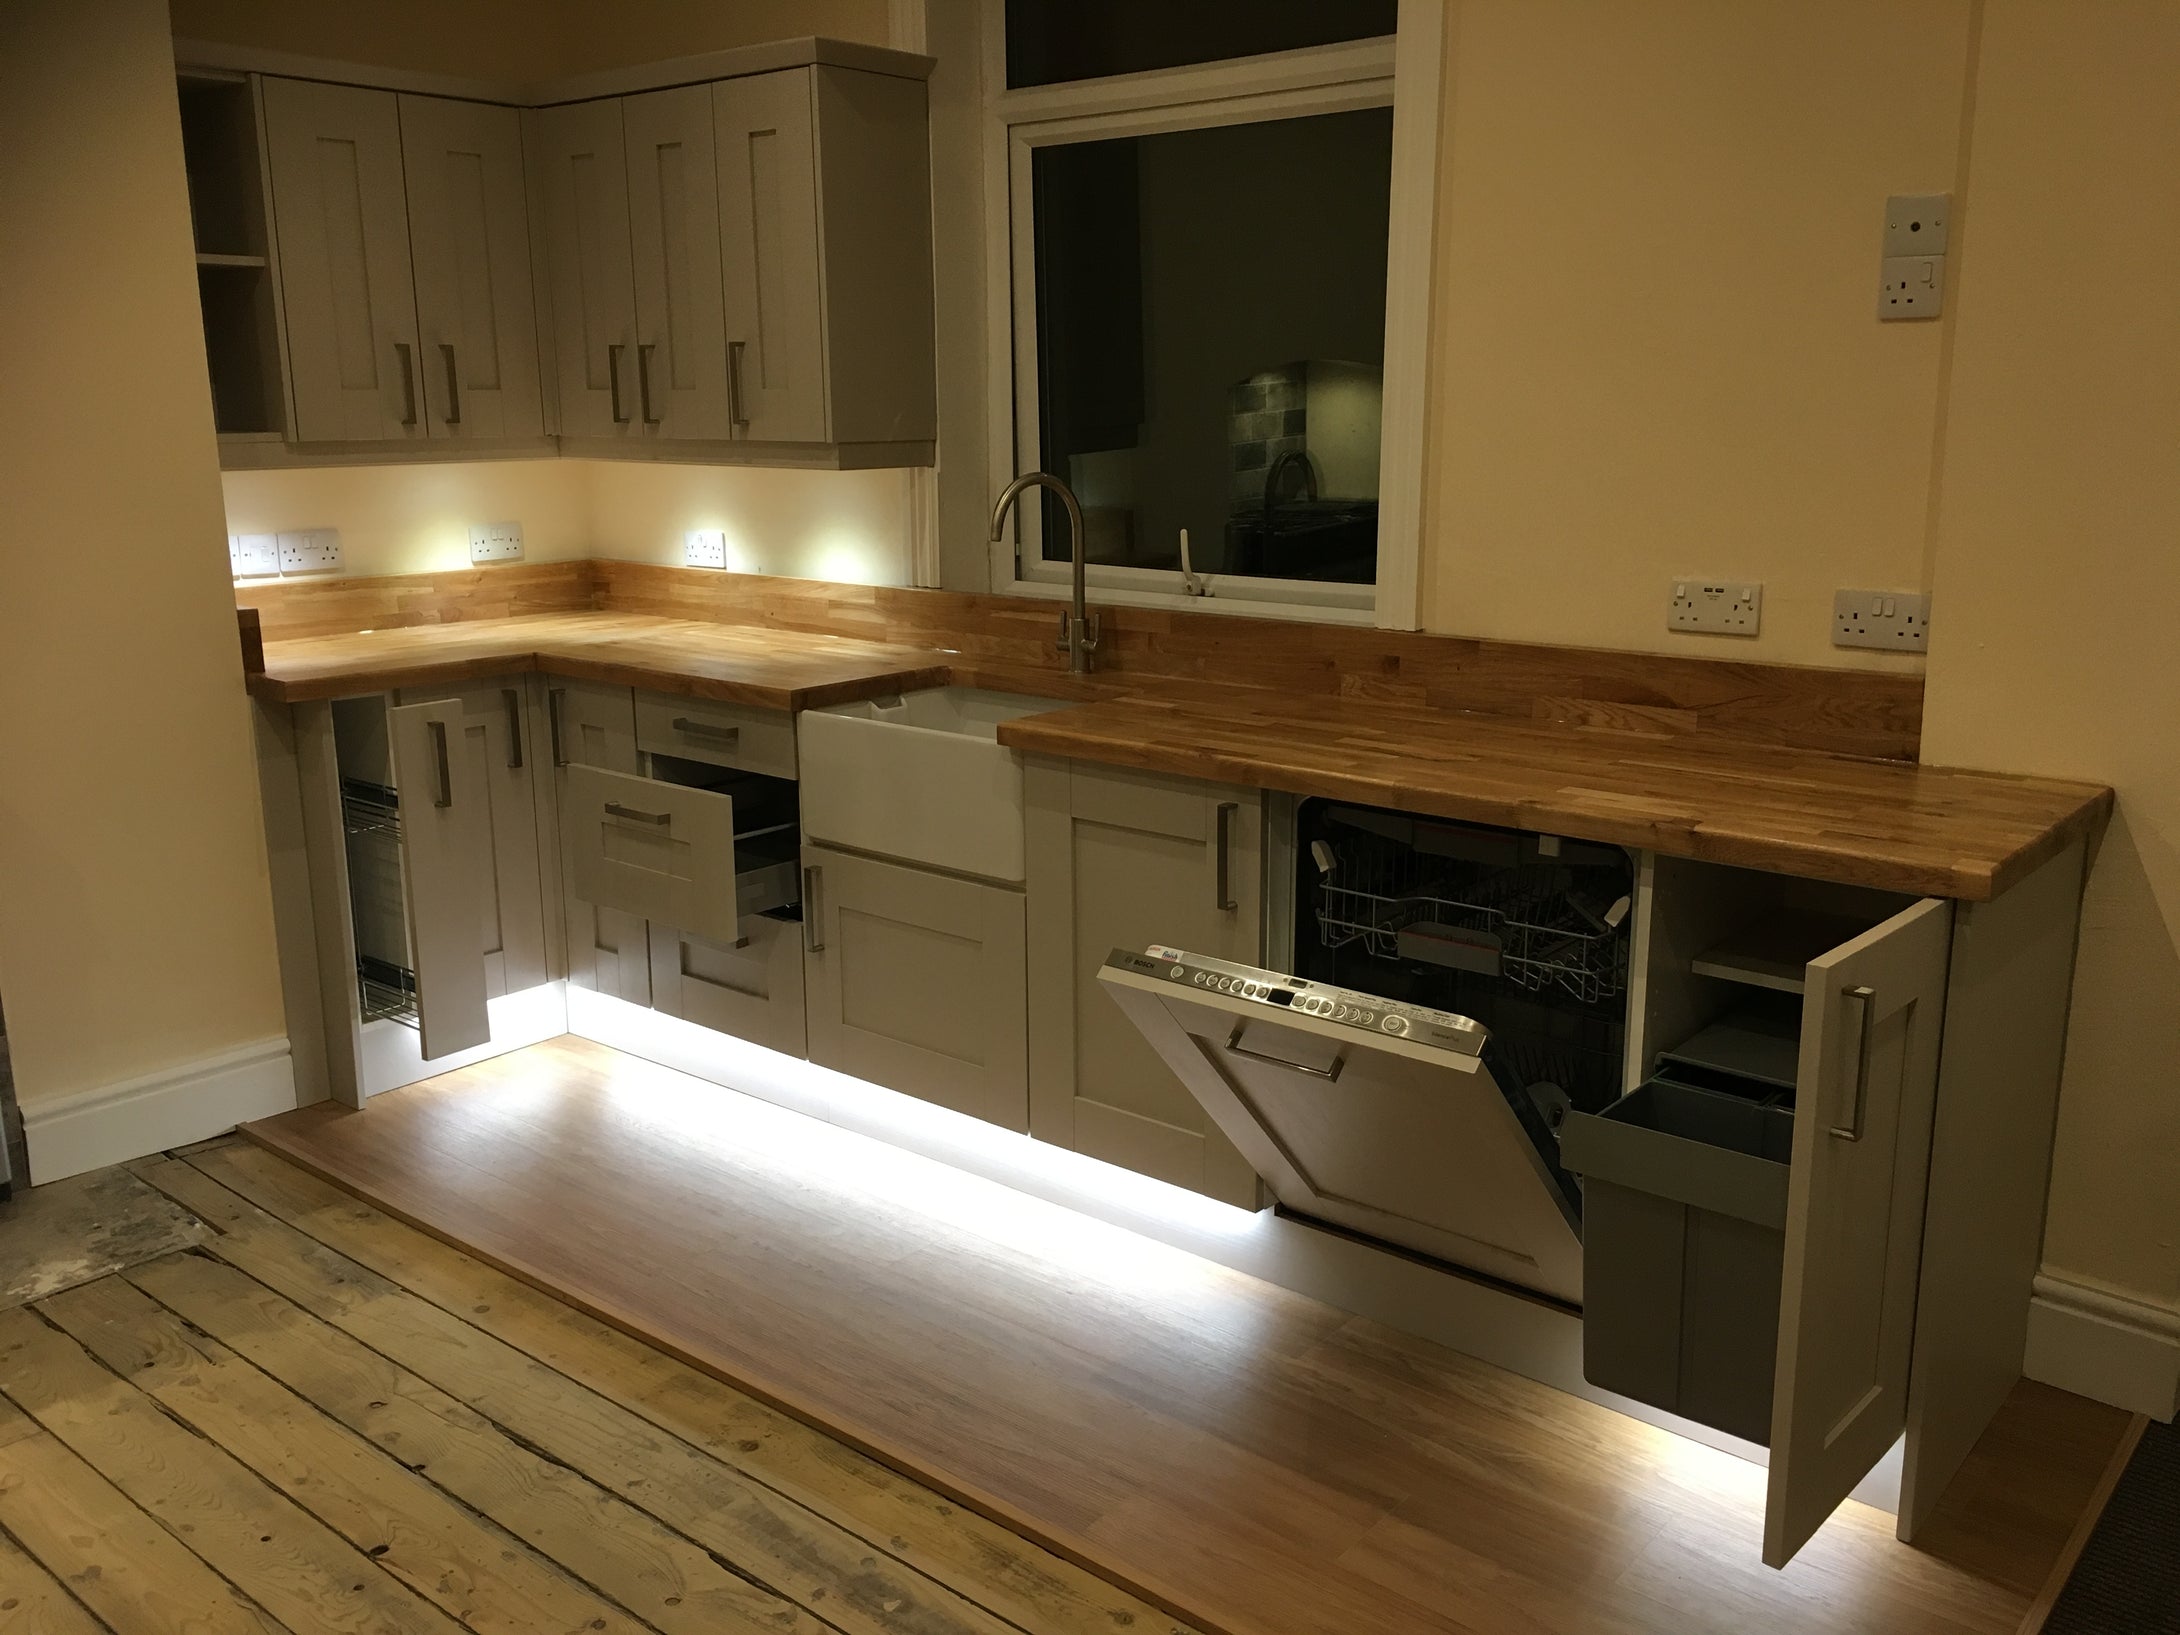 Solid Oak Worktops Belfast Sink Kitchen Supplied Fit